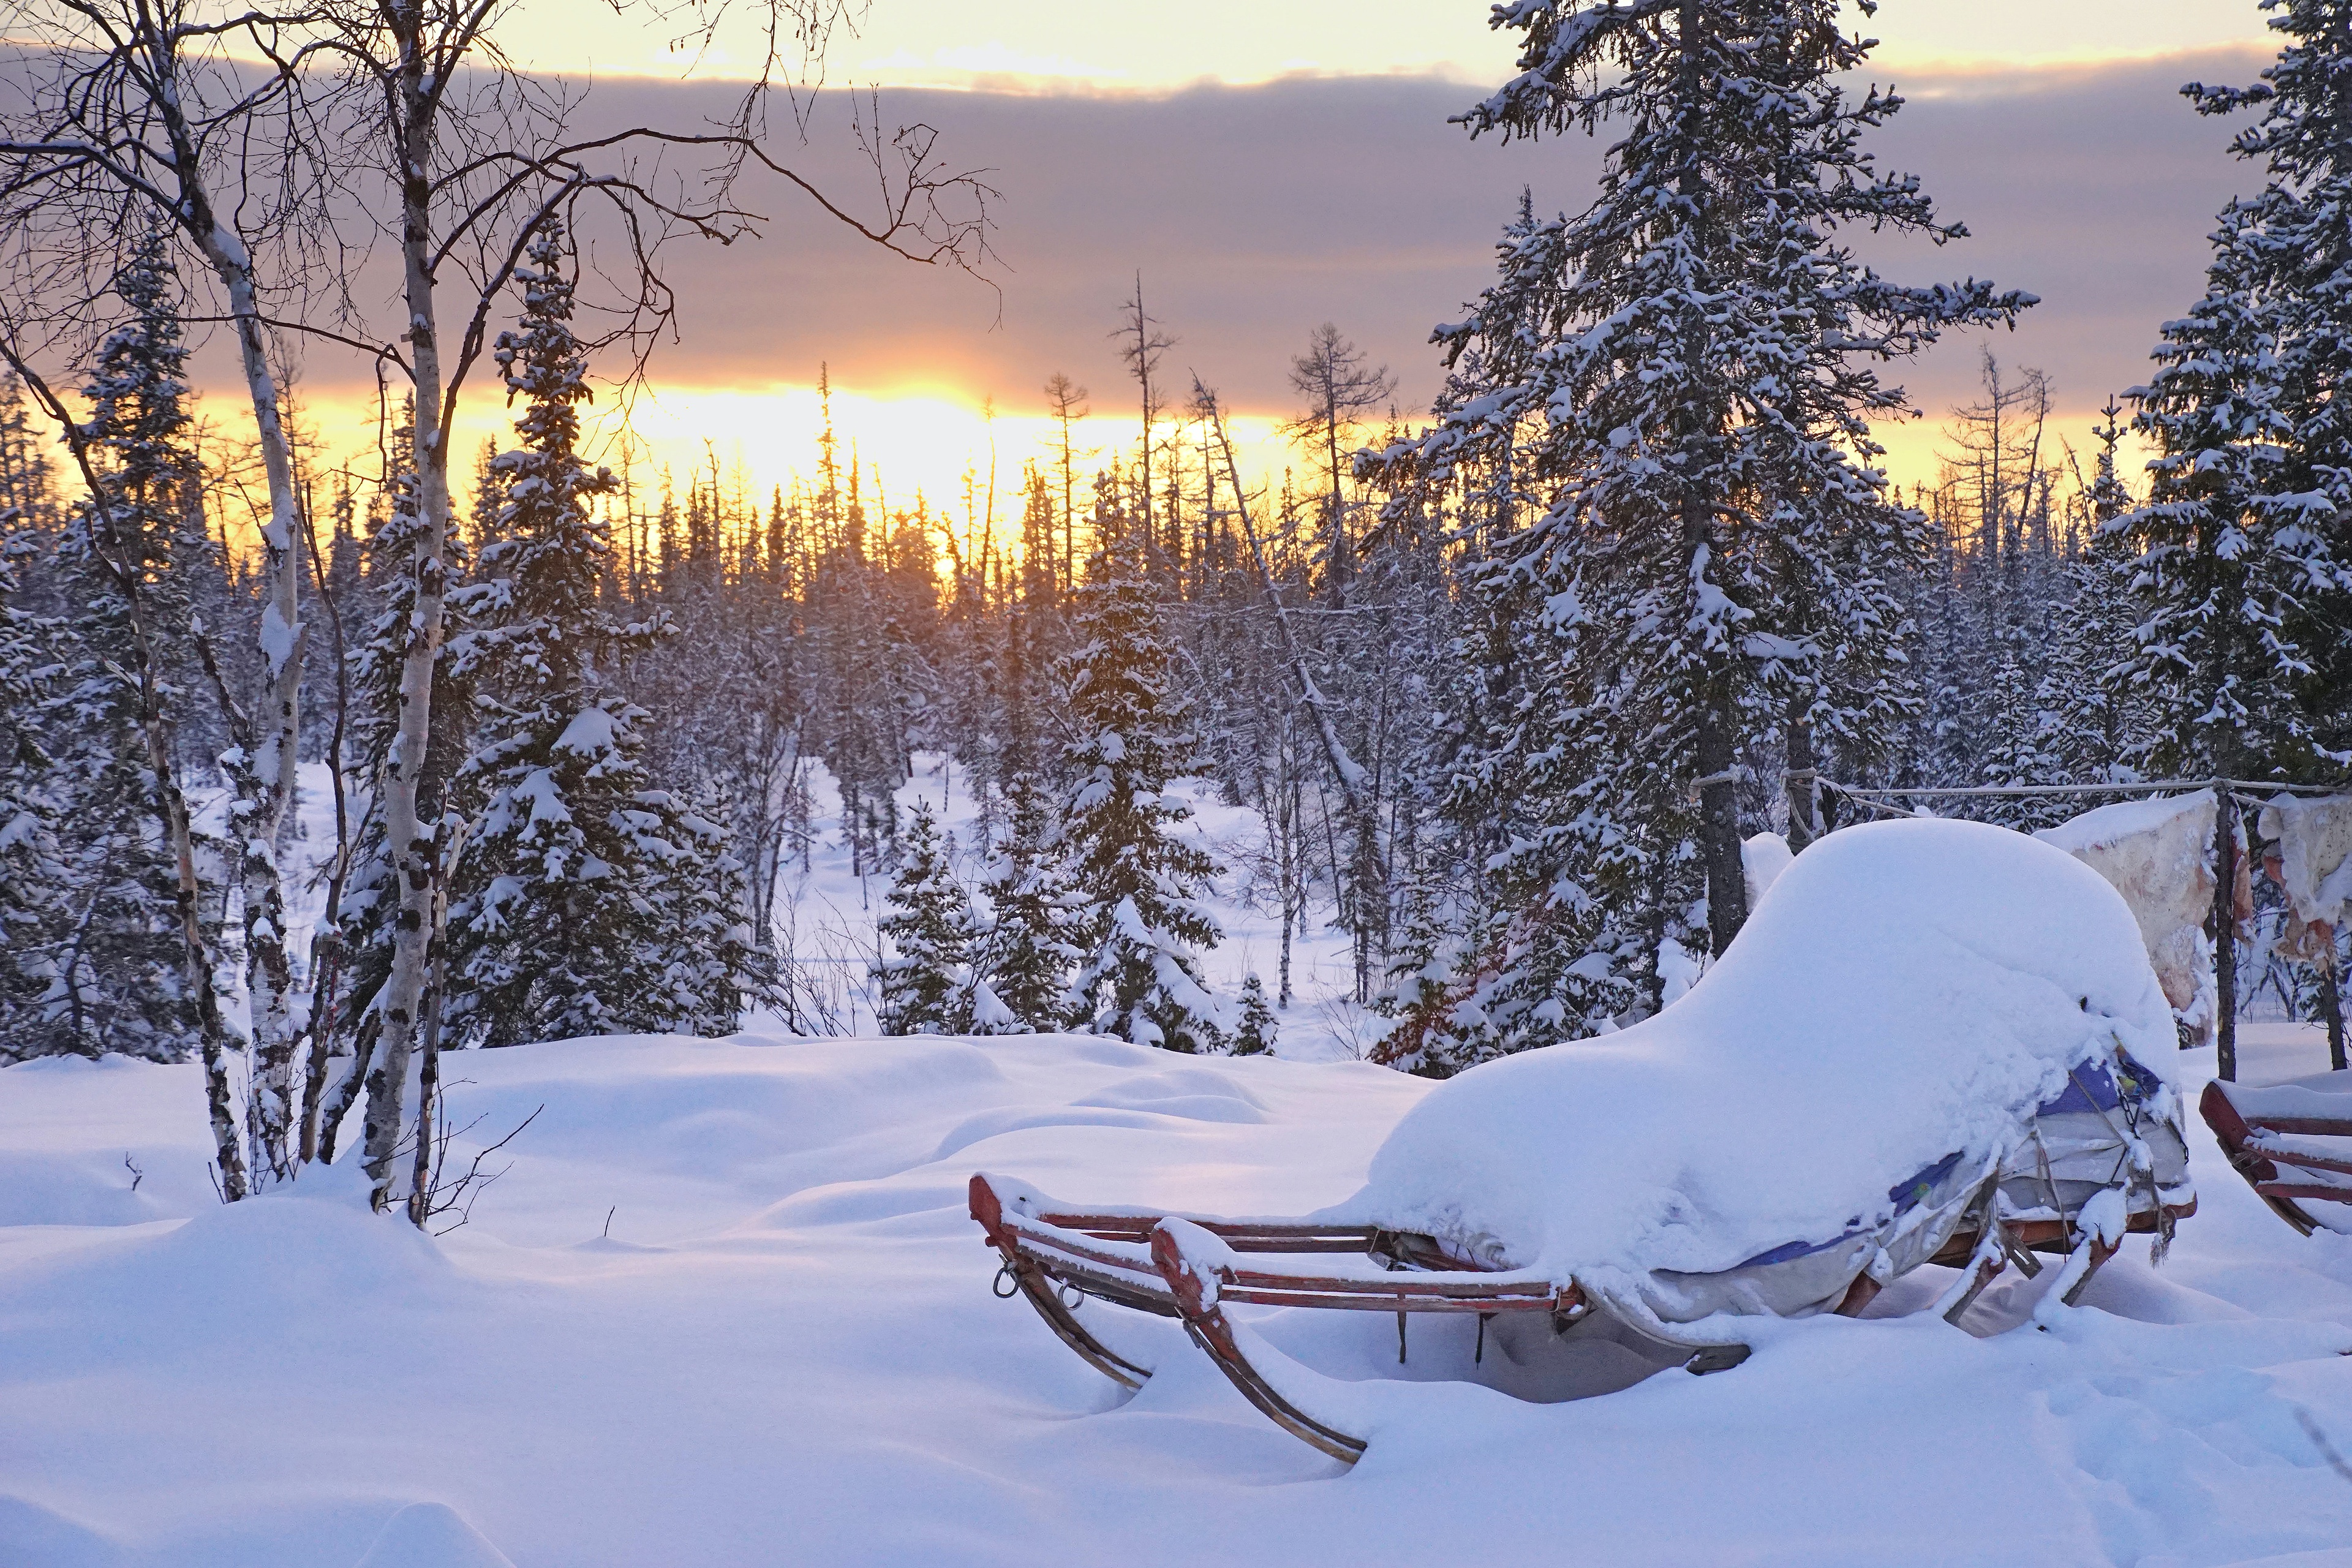 Скачать картинку Зима, Природа, Закат, Снег, Сосна, Сани, Фотографии в телефон бесплатно.